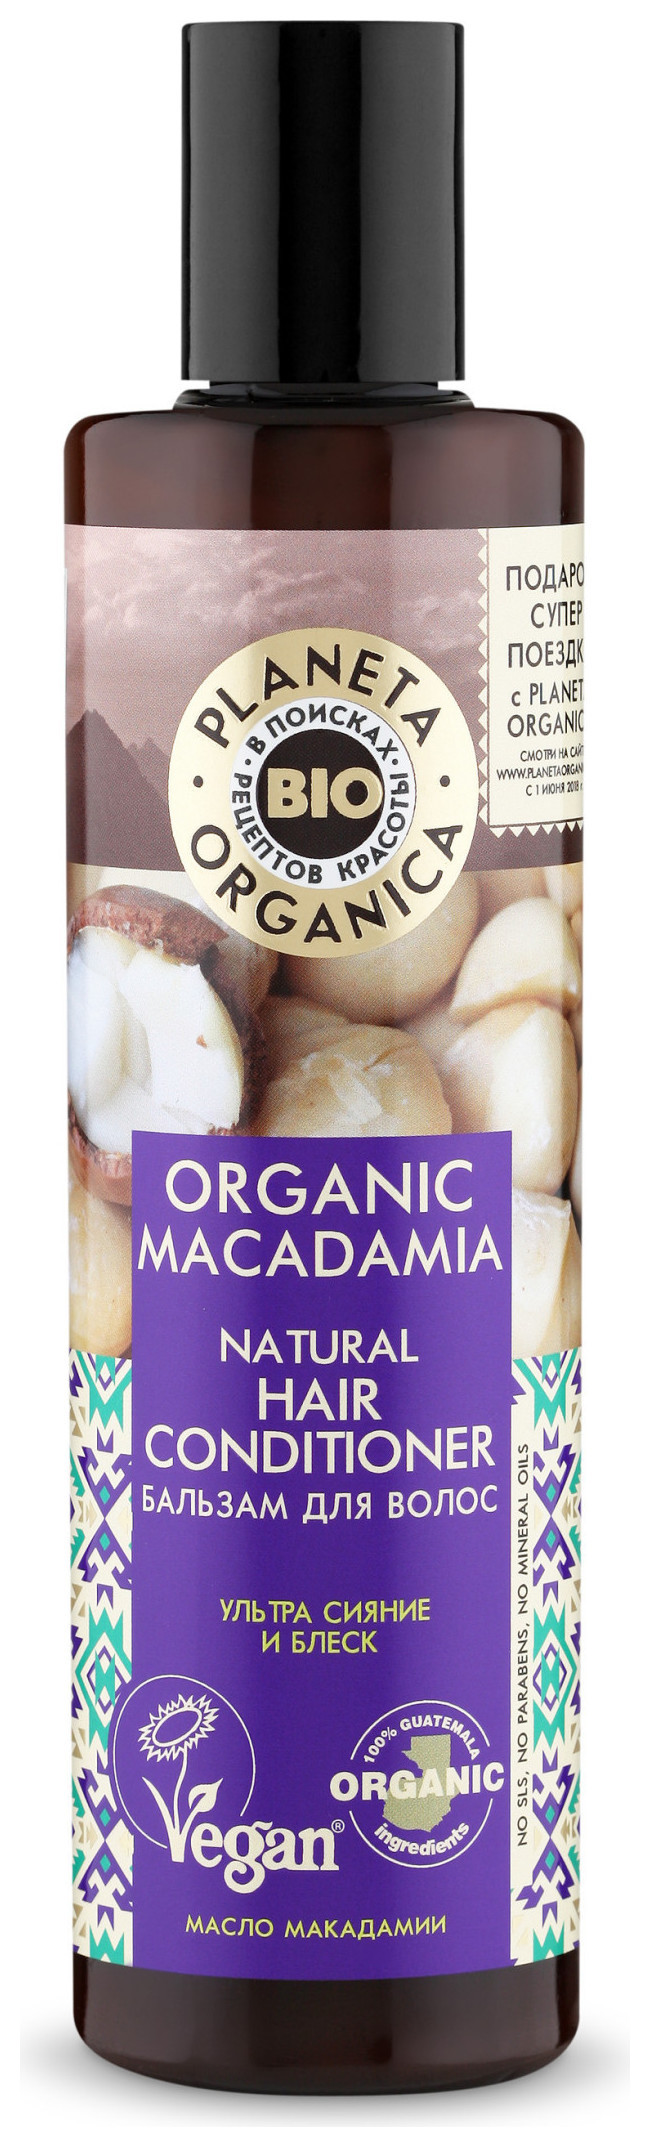 Бальзам для волос Organic Macadamia Натуральный